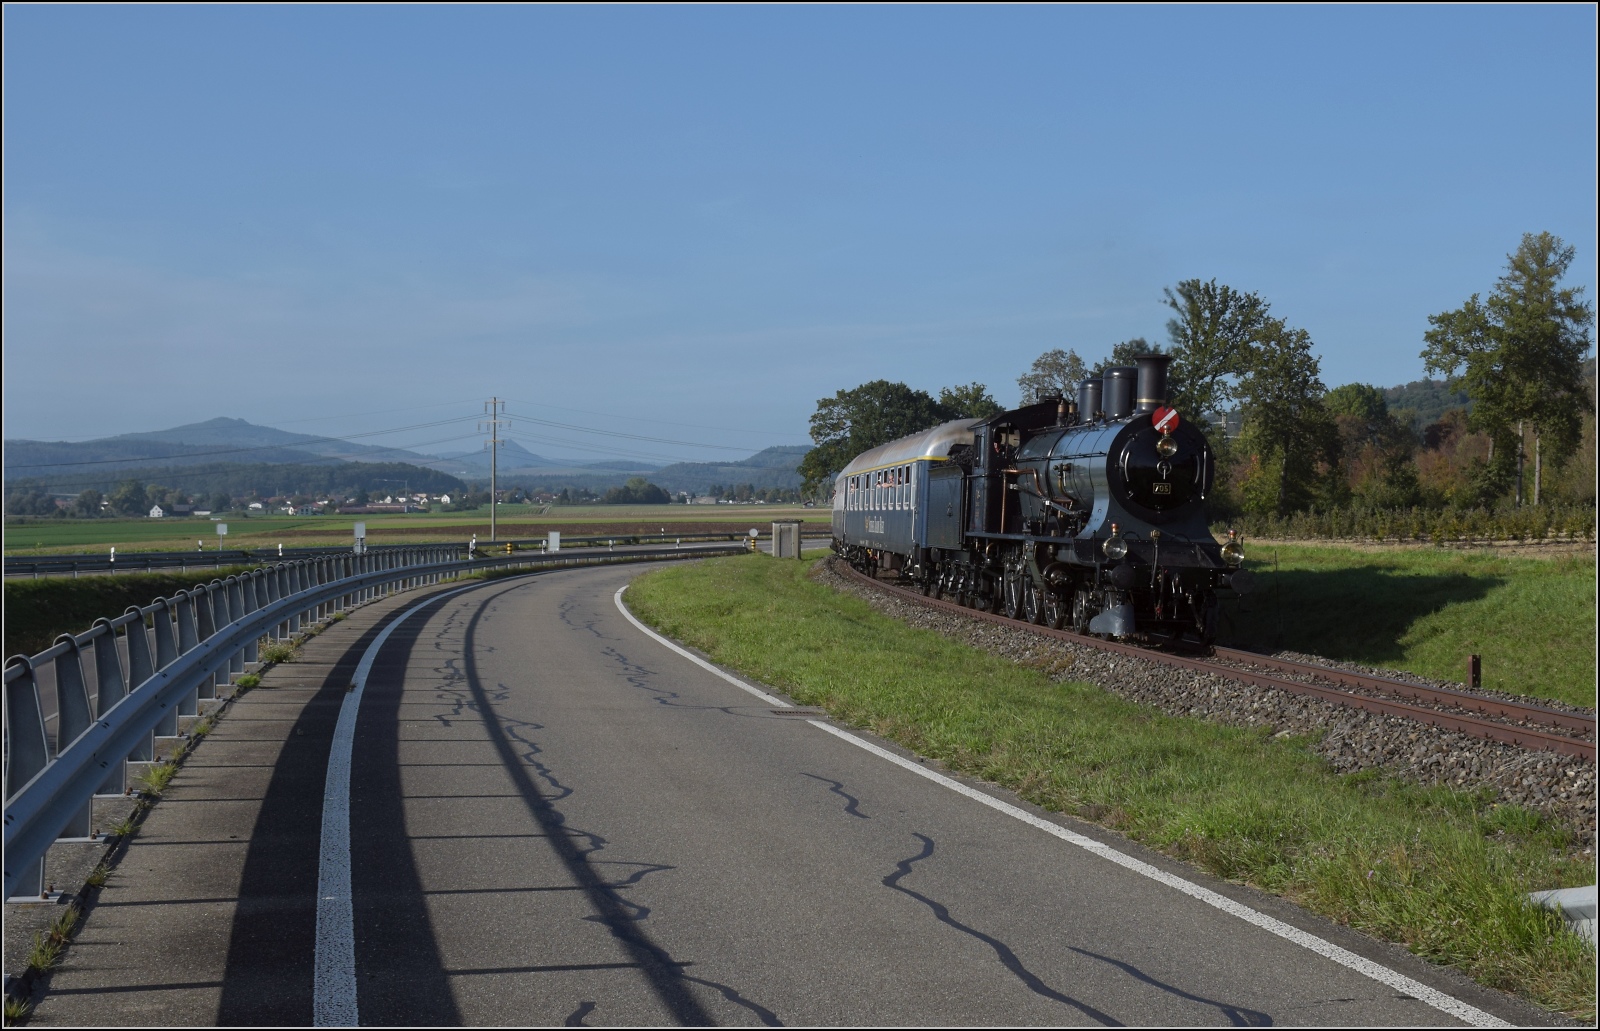 A 3/5 auf dem Schweizer Bhnle.

A 3/5 mit dem Swiss Train Bleu auf dem Weg nach Hemishofen. September 2023.